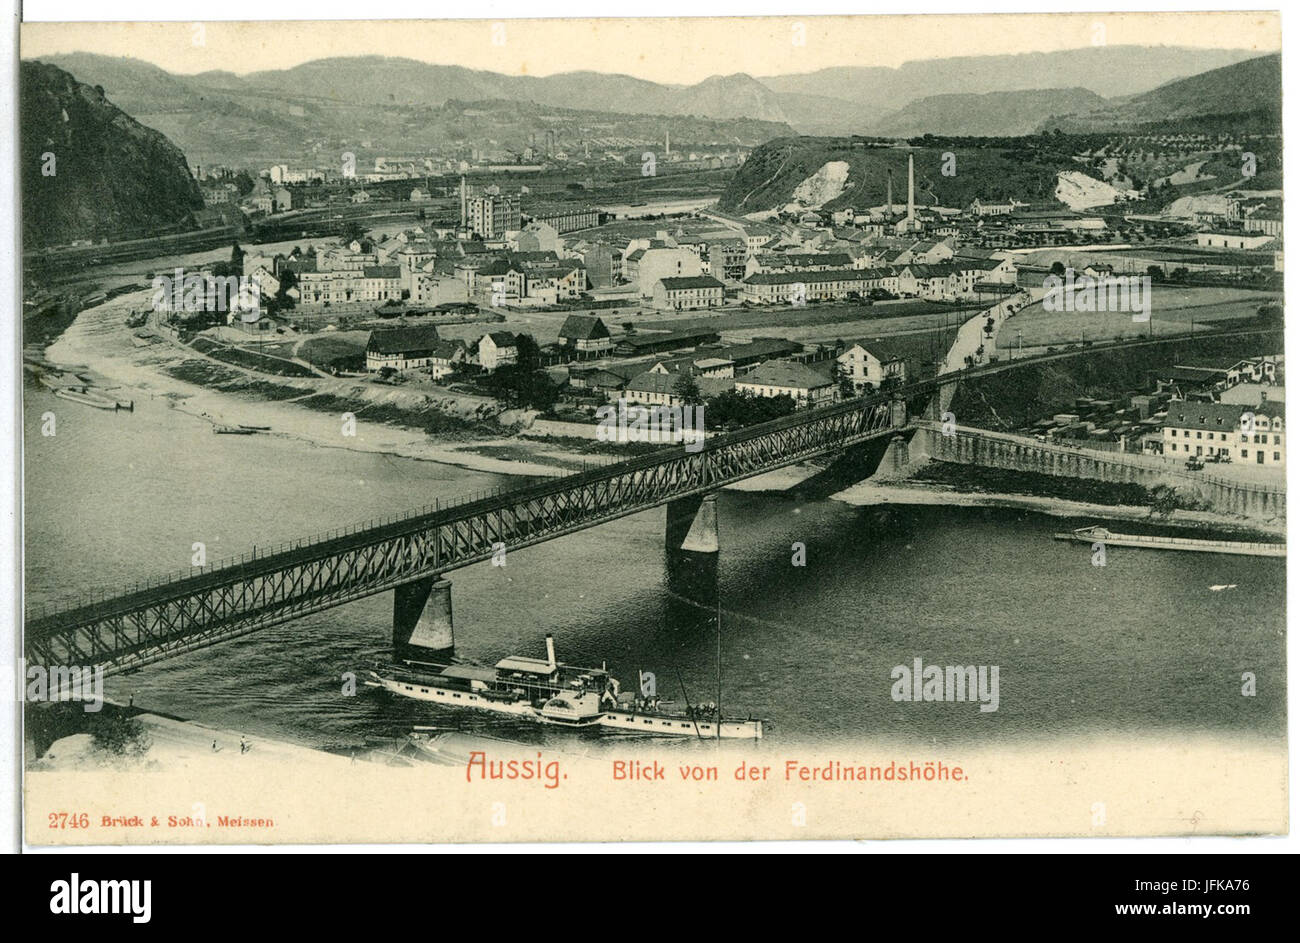 0 46-Aussig-Elbe-1902-Blick von der Ferdinandshöhe auf Stadt, Elbe, Dampfer, Brücke-Brück & Sohn Kunstverlag Stock Photo